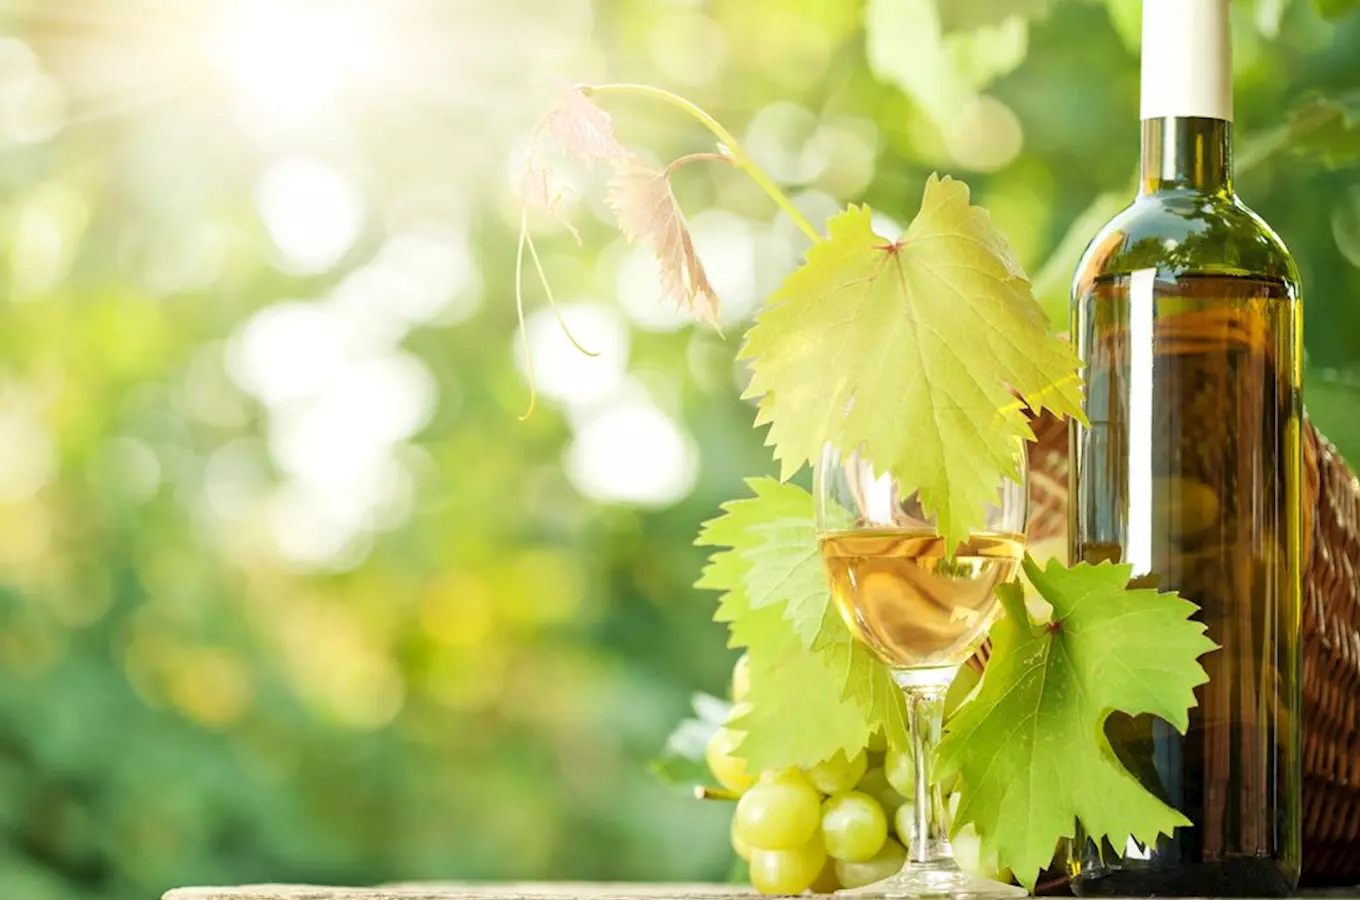 Nejlepším vínem České republiky 2019 je Rulandské bílé Zámeckého vinařství Bzenec